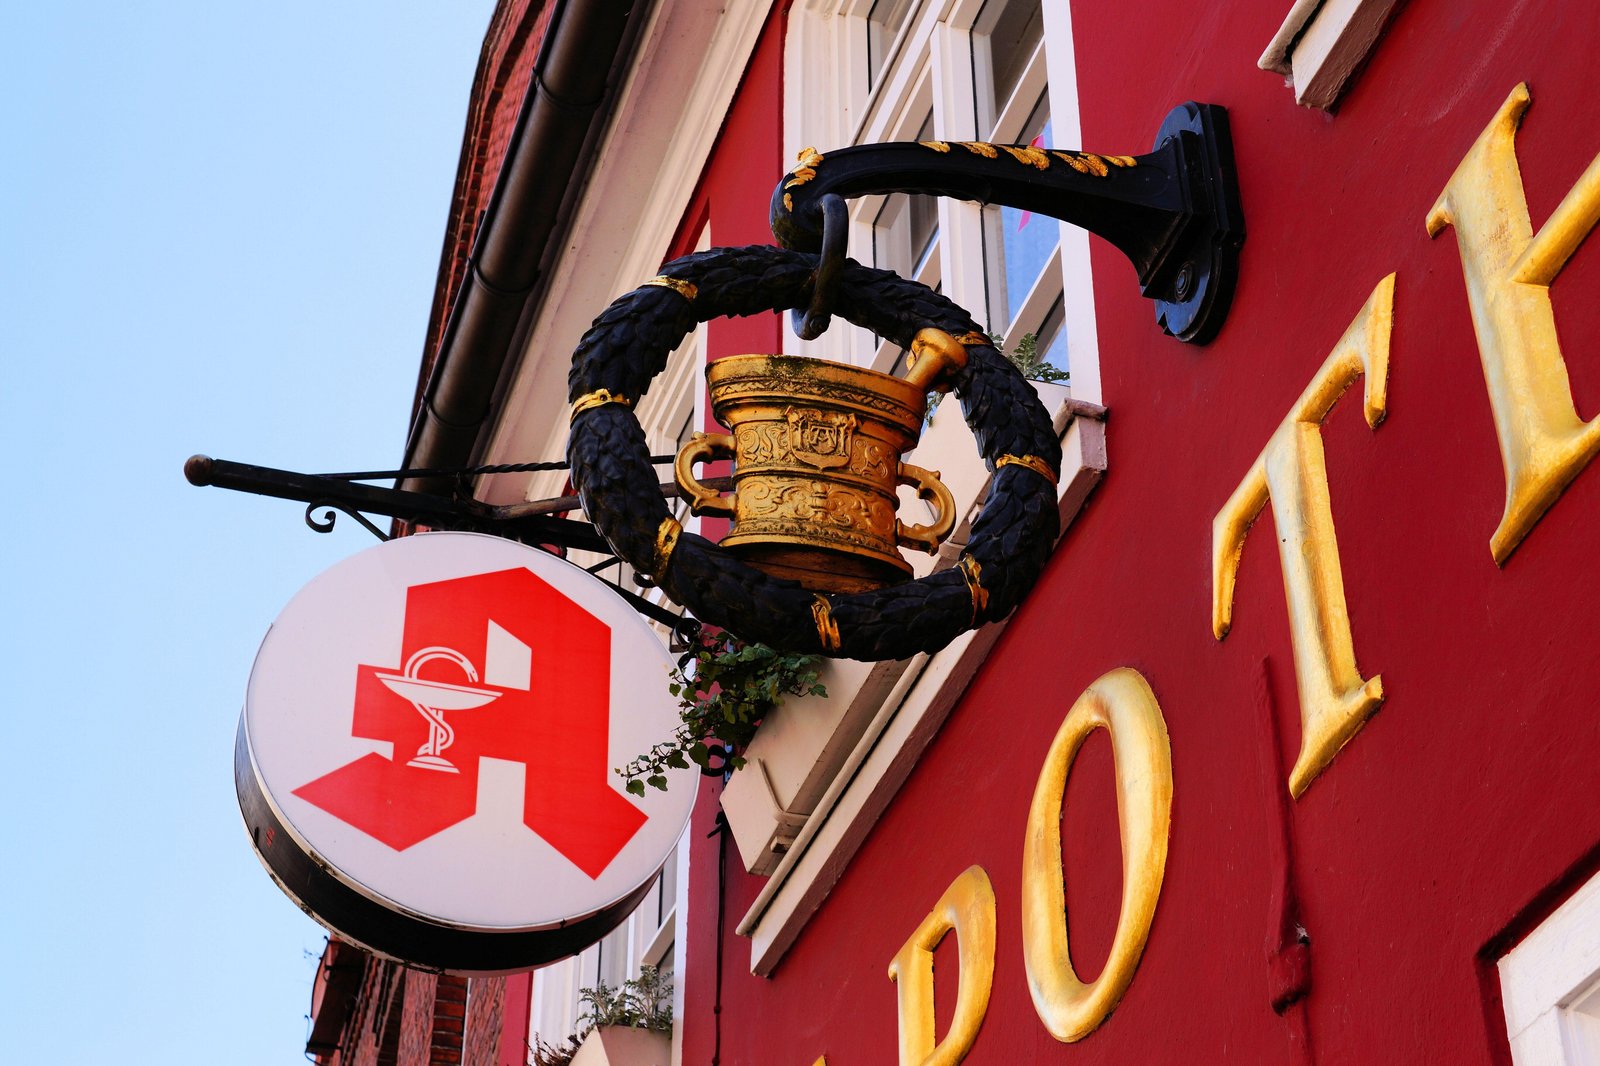 Imagem do símbolo da farmácia alemã